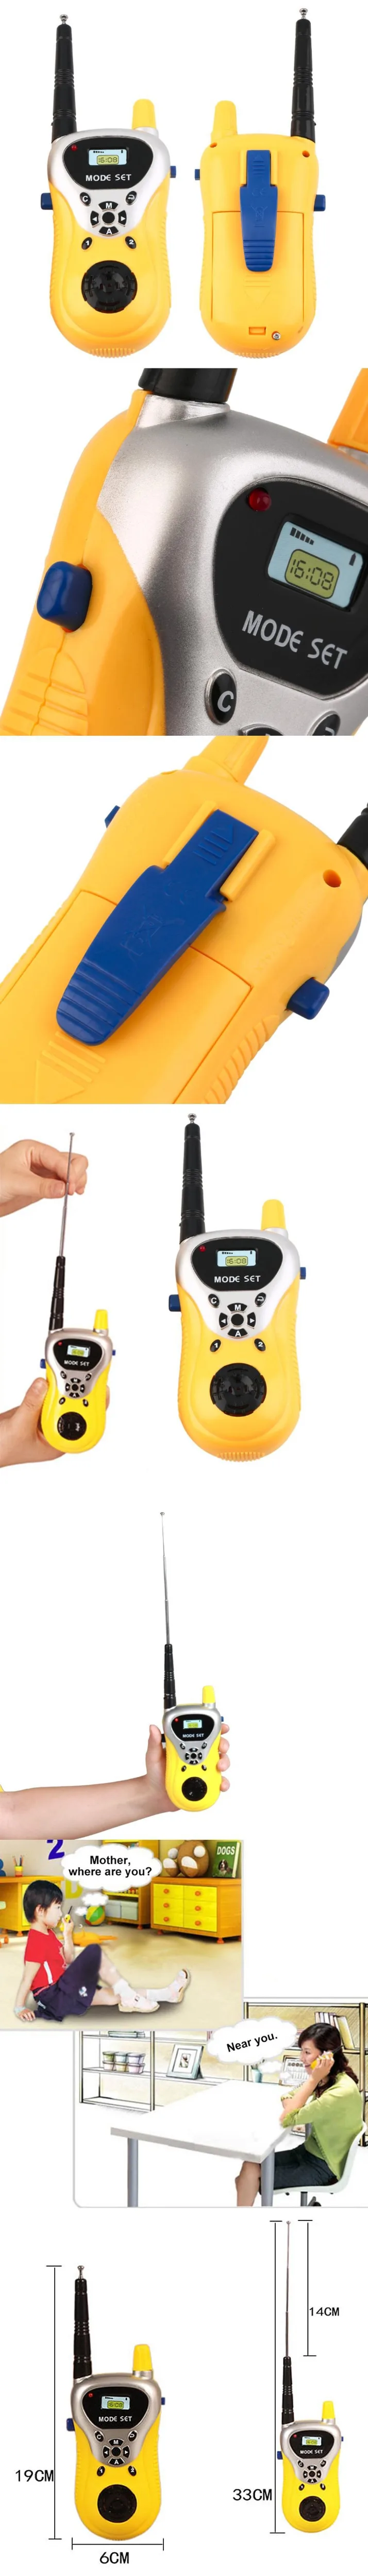 1 пара желтый домофон электронная игрушечная рация ребенок мини портативный телефон игрушка портативный двухсторонний радио домофон беспроводной